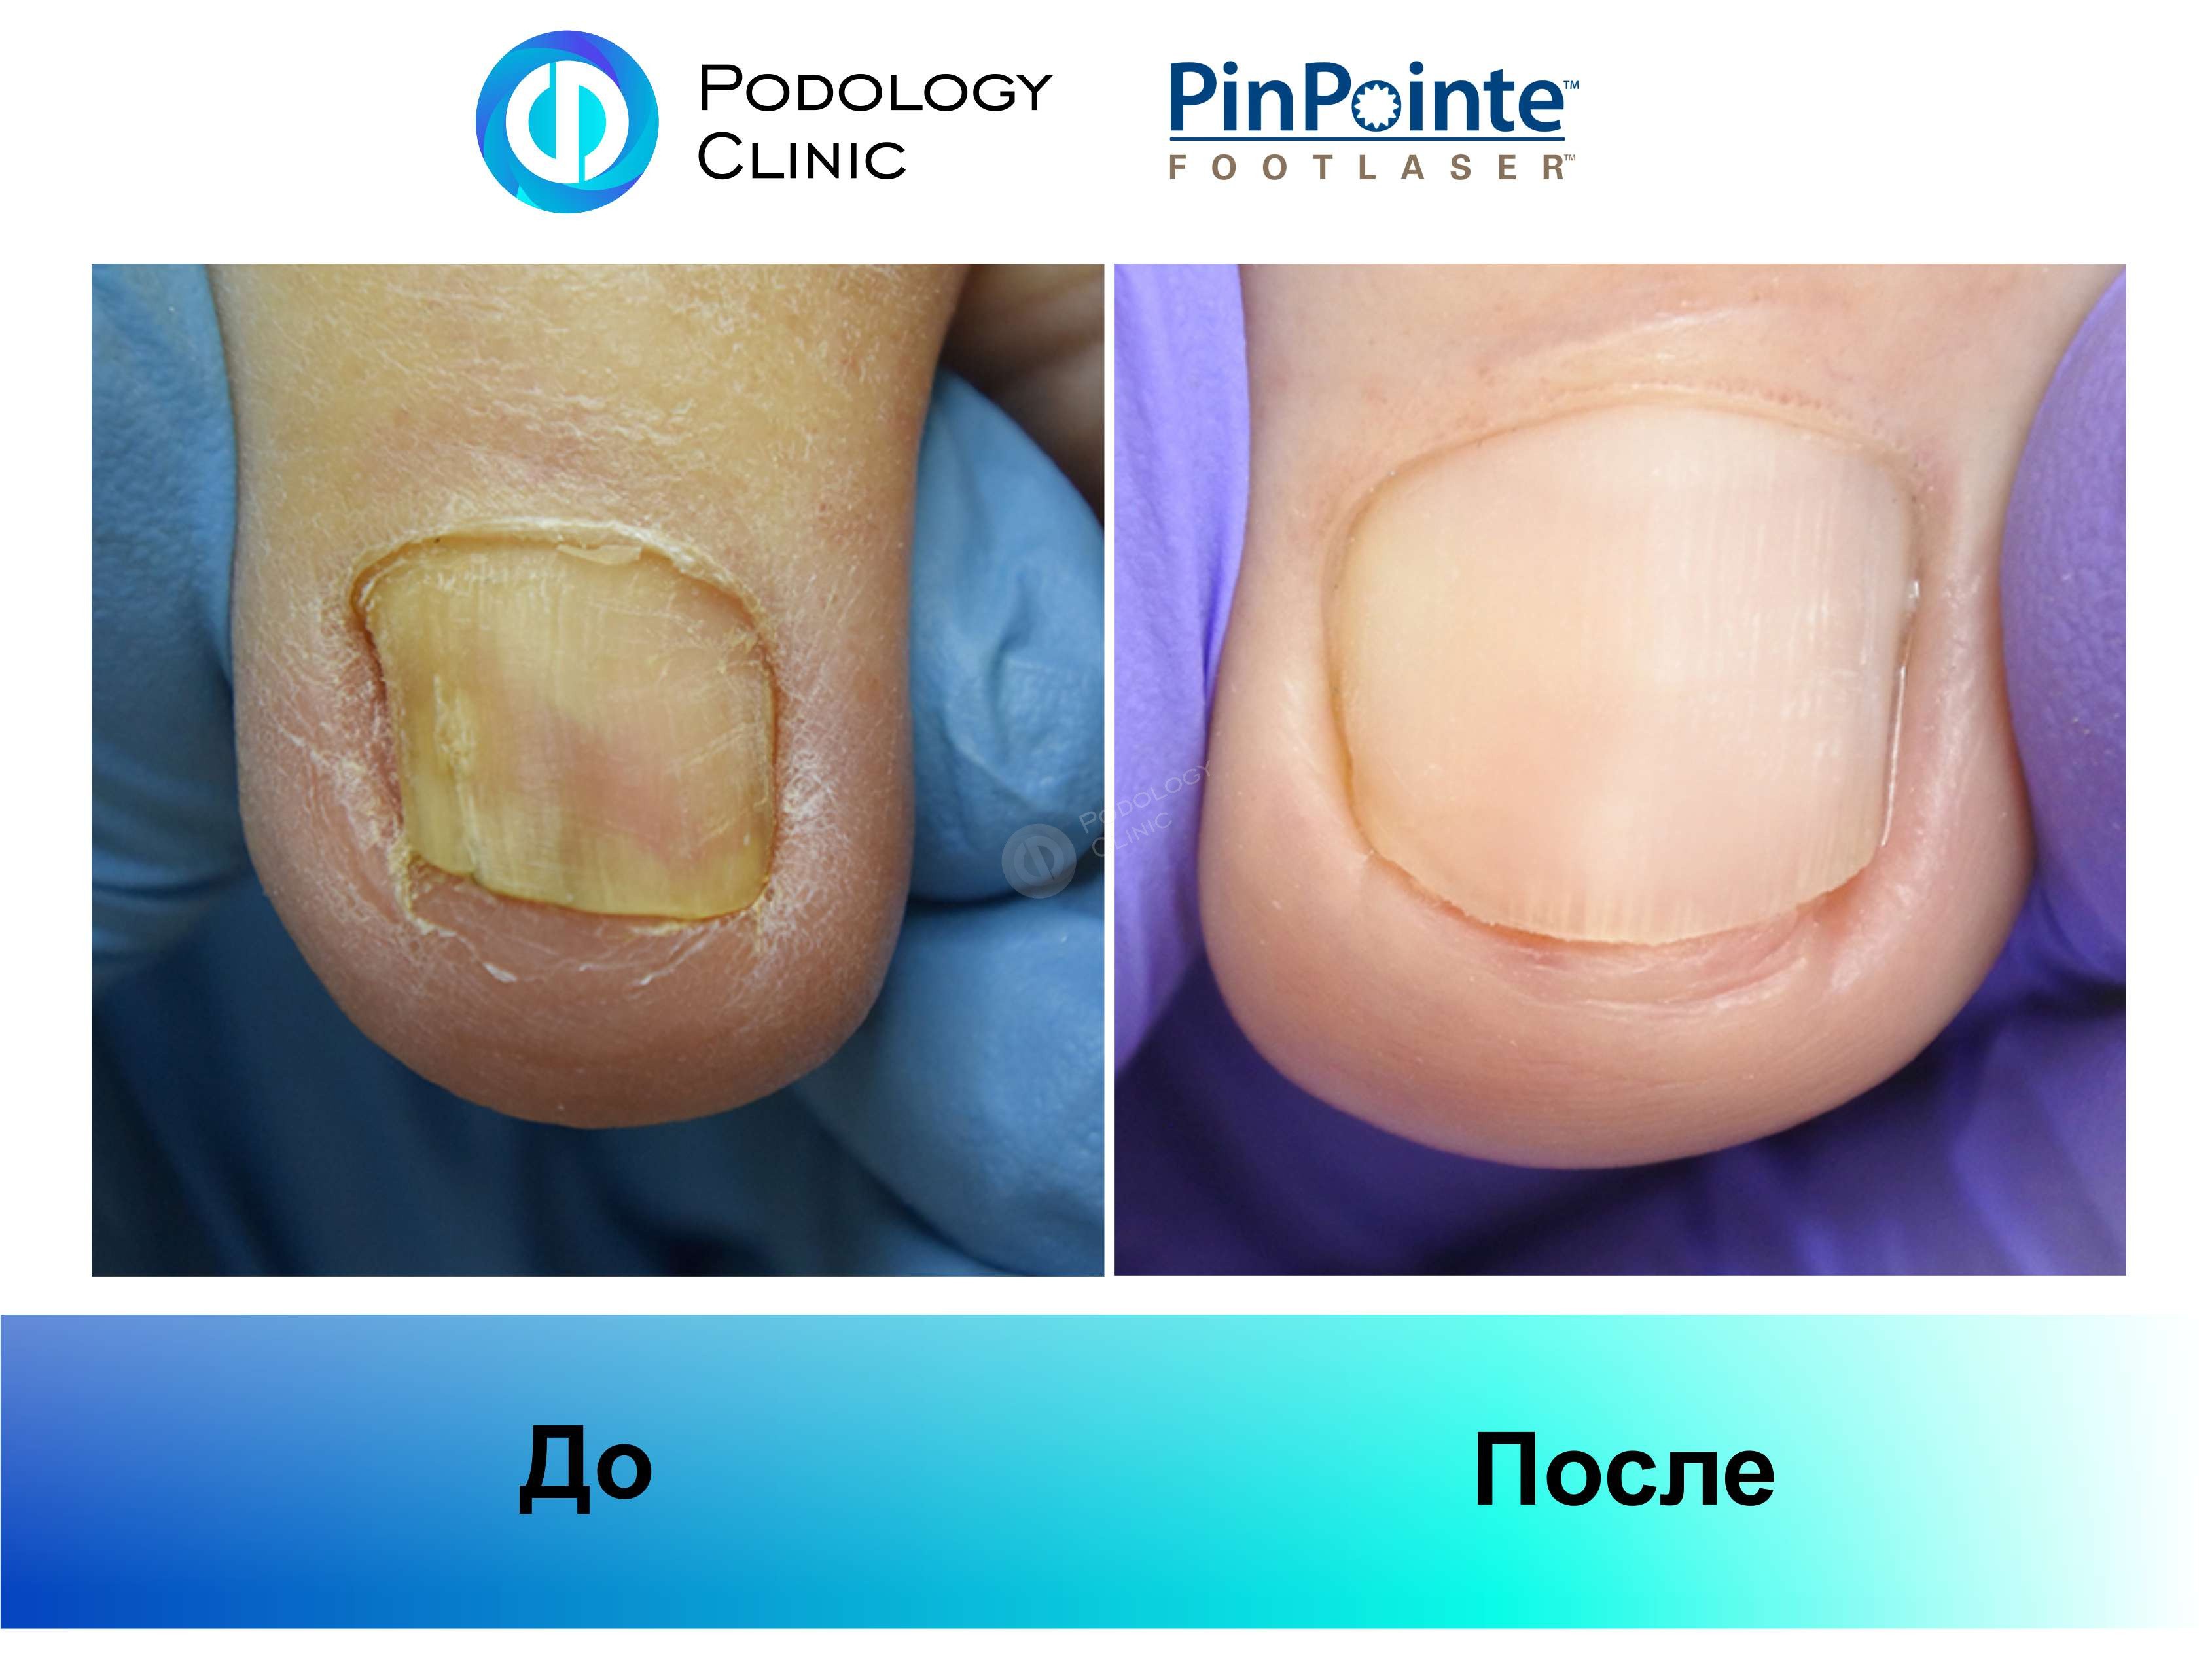 Примеры работы лазера PinPointe FootLaser в лечении онихомикоза, фото 2